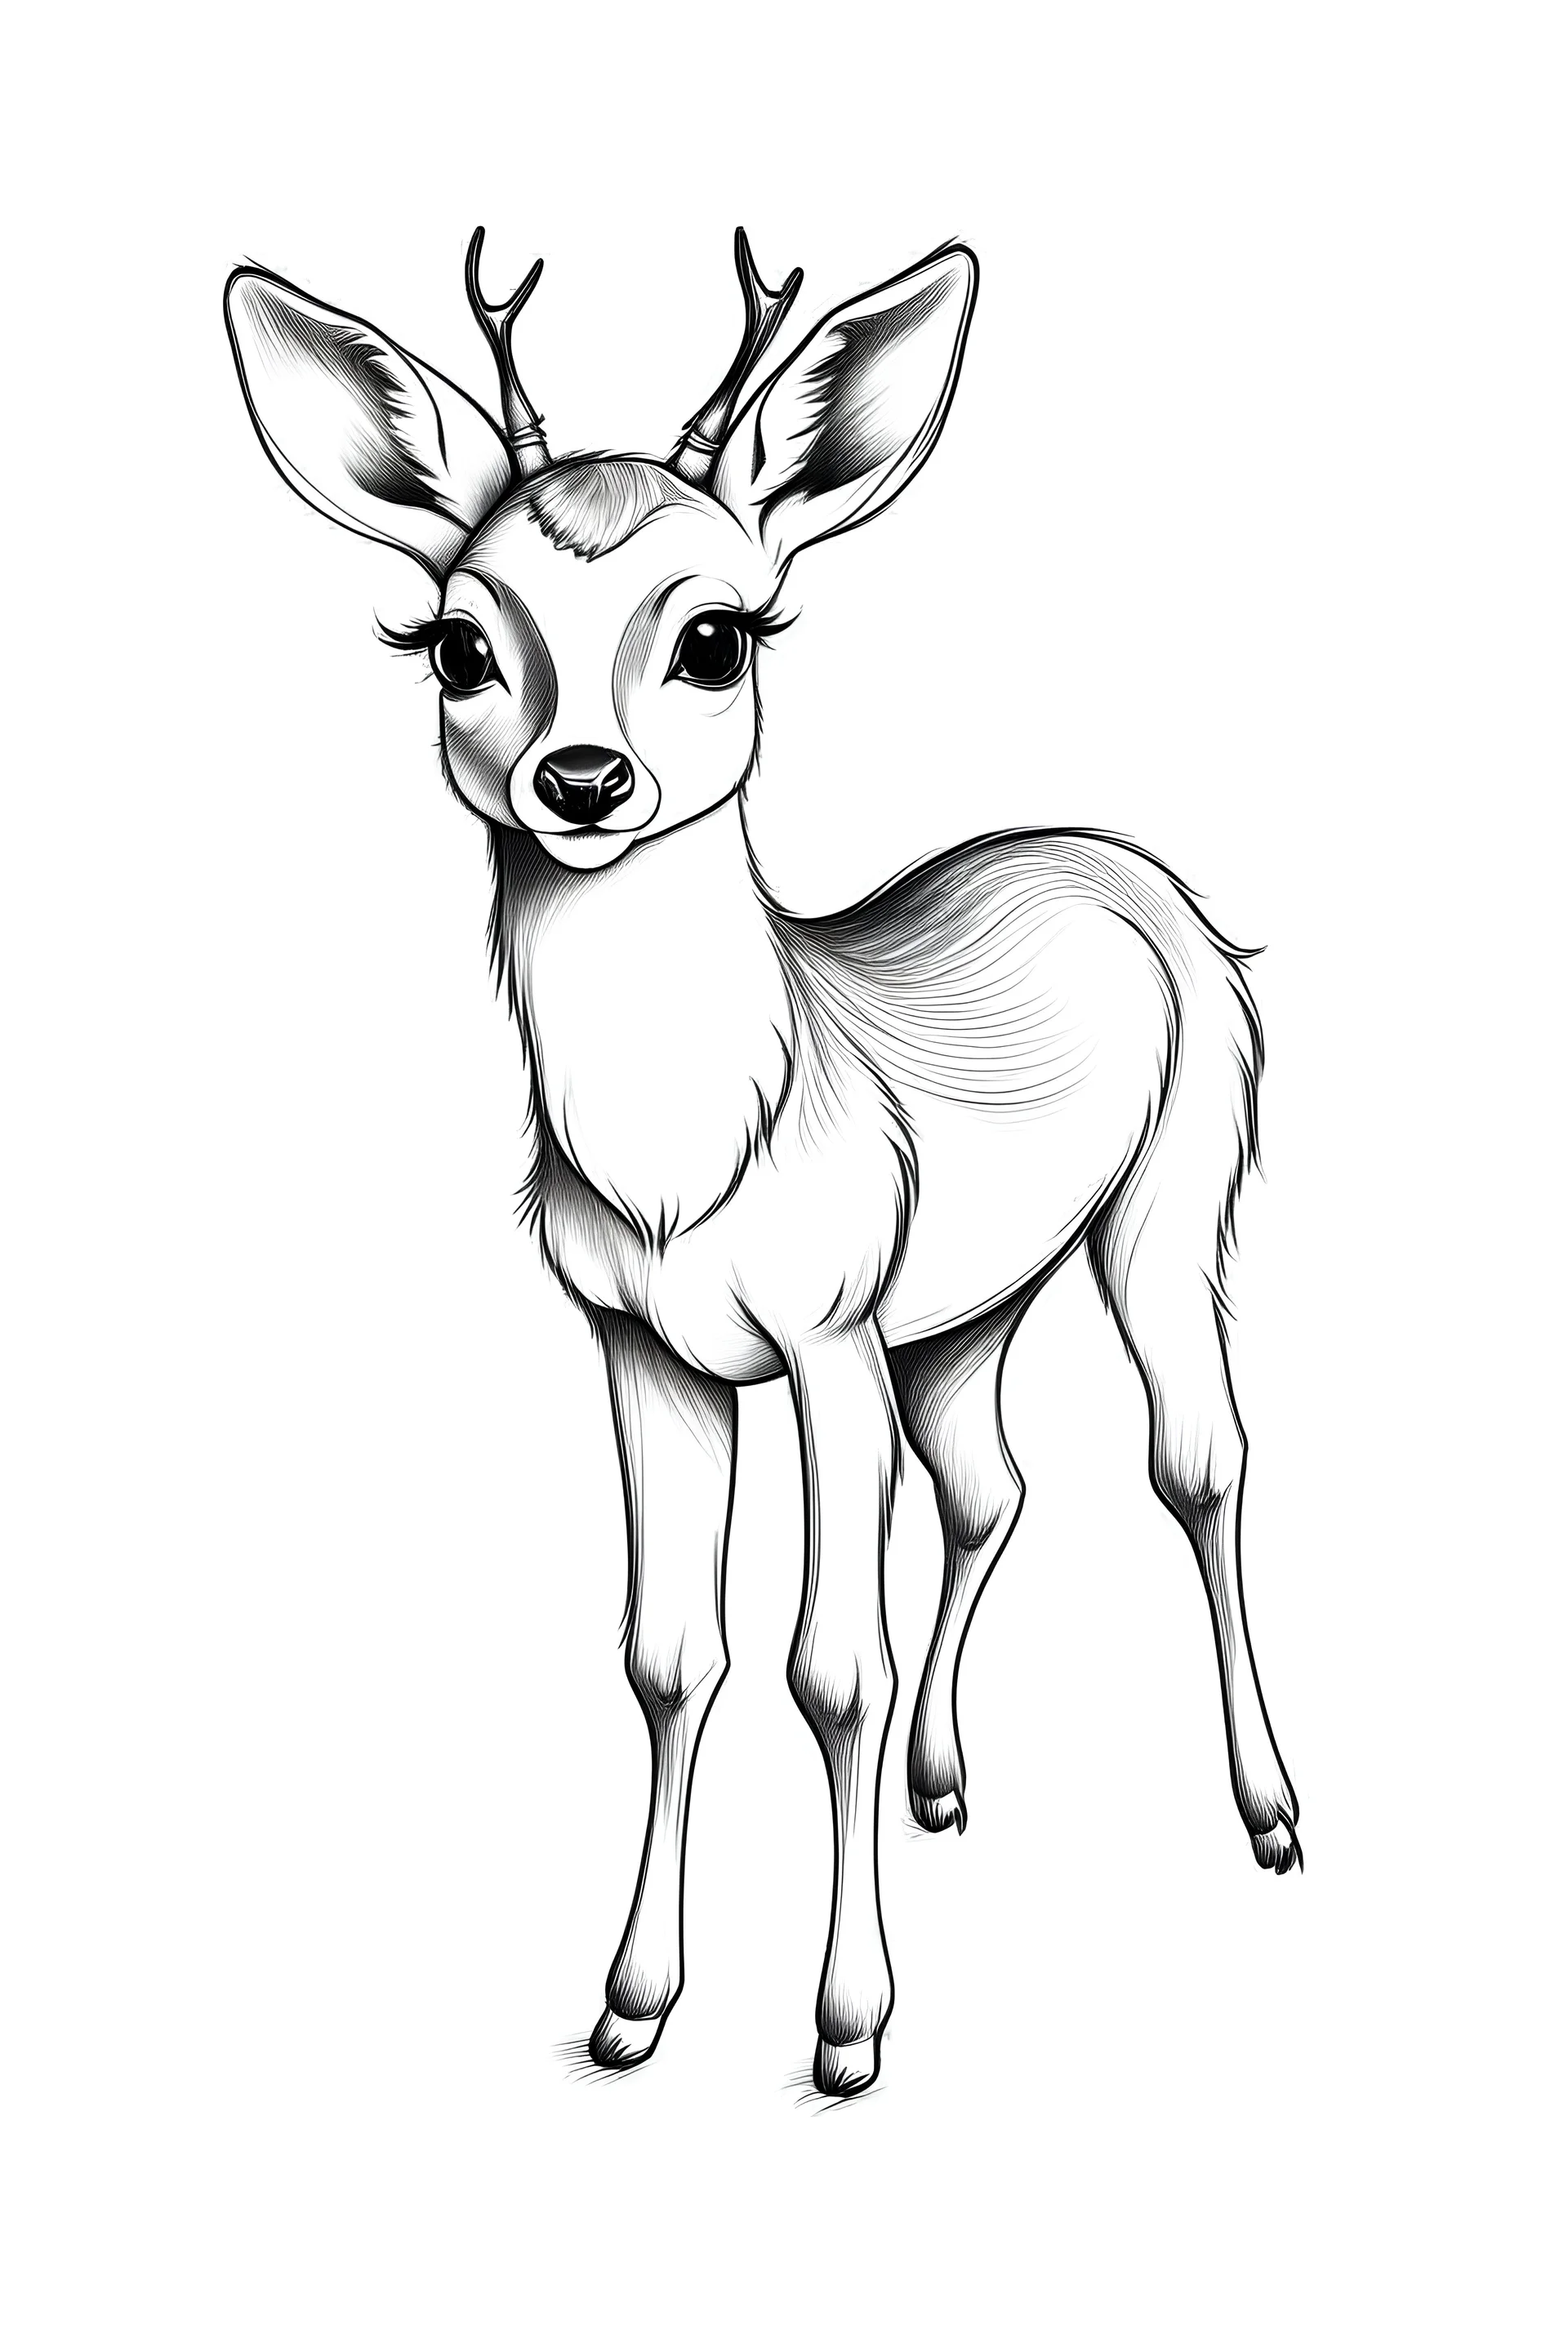 Illustrating a Deer for Packaging - Lizzie Harper